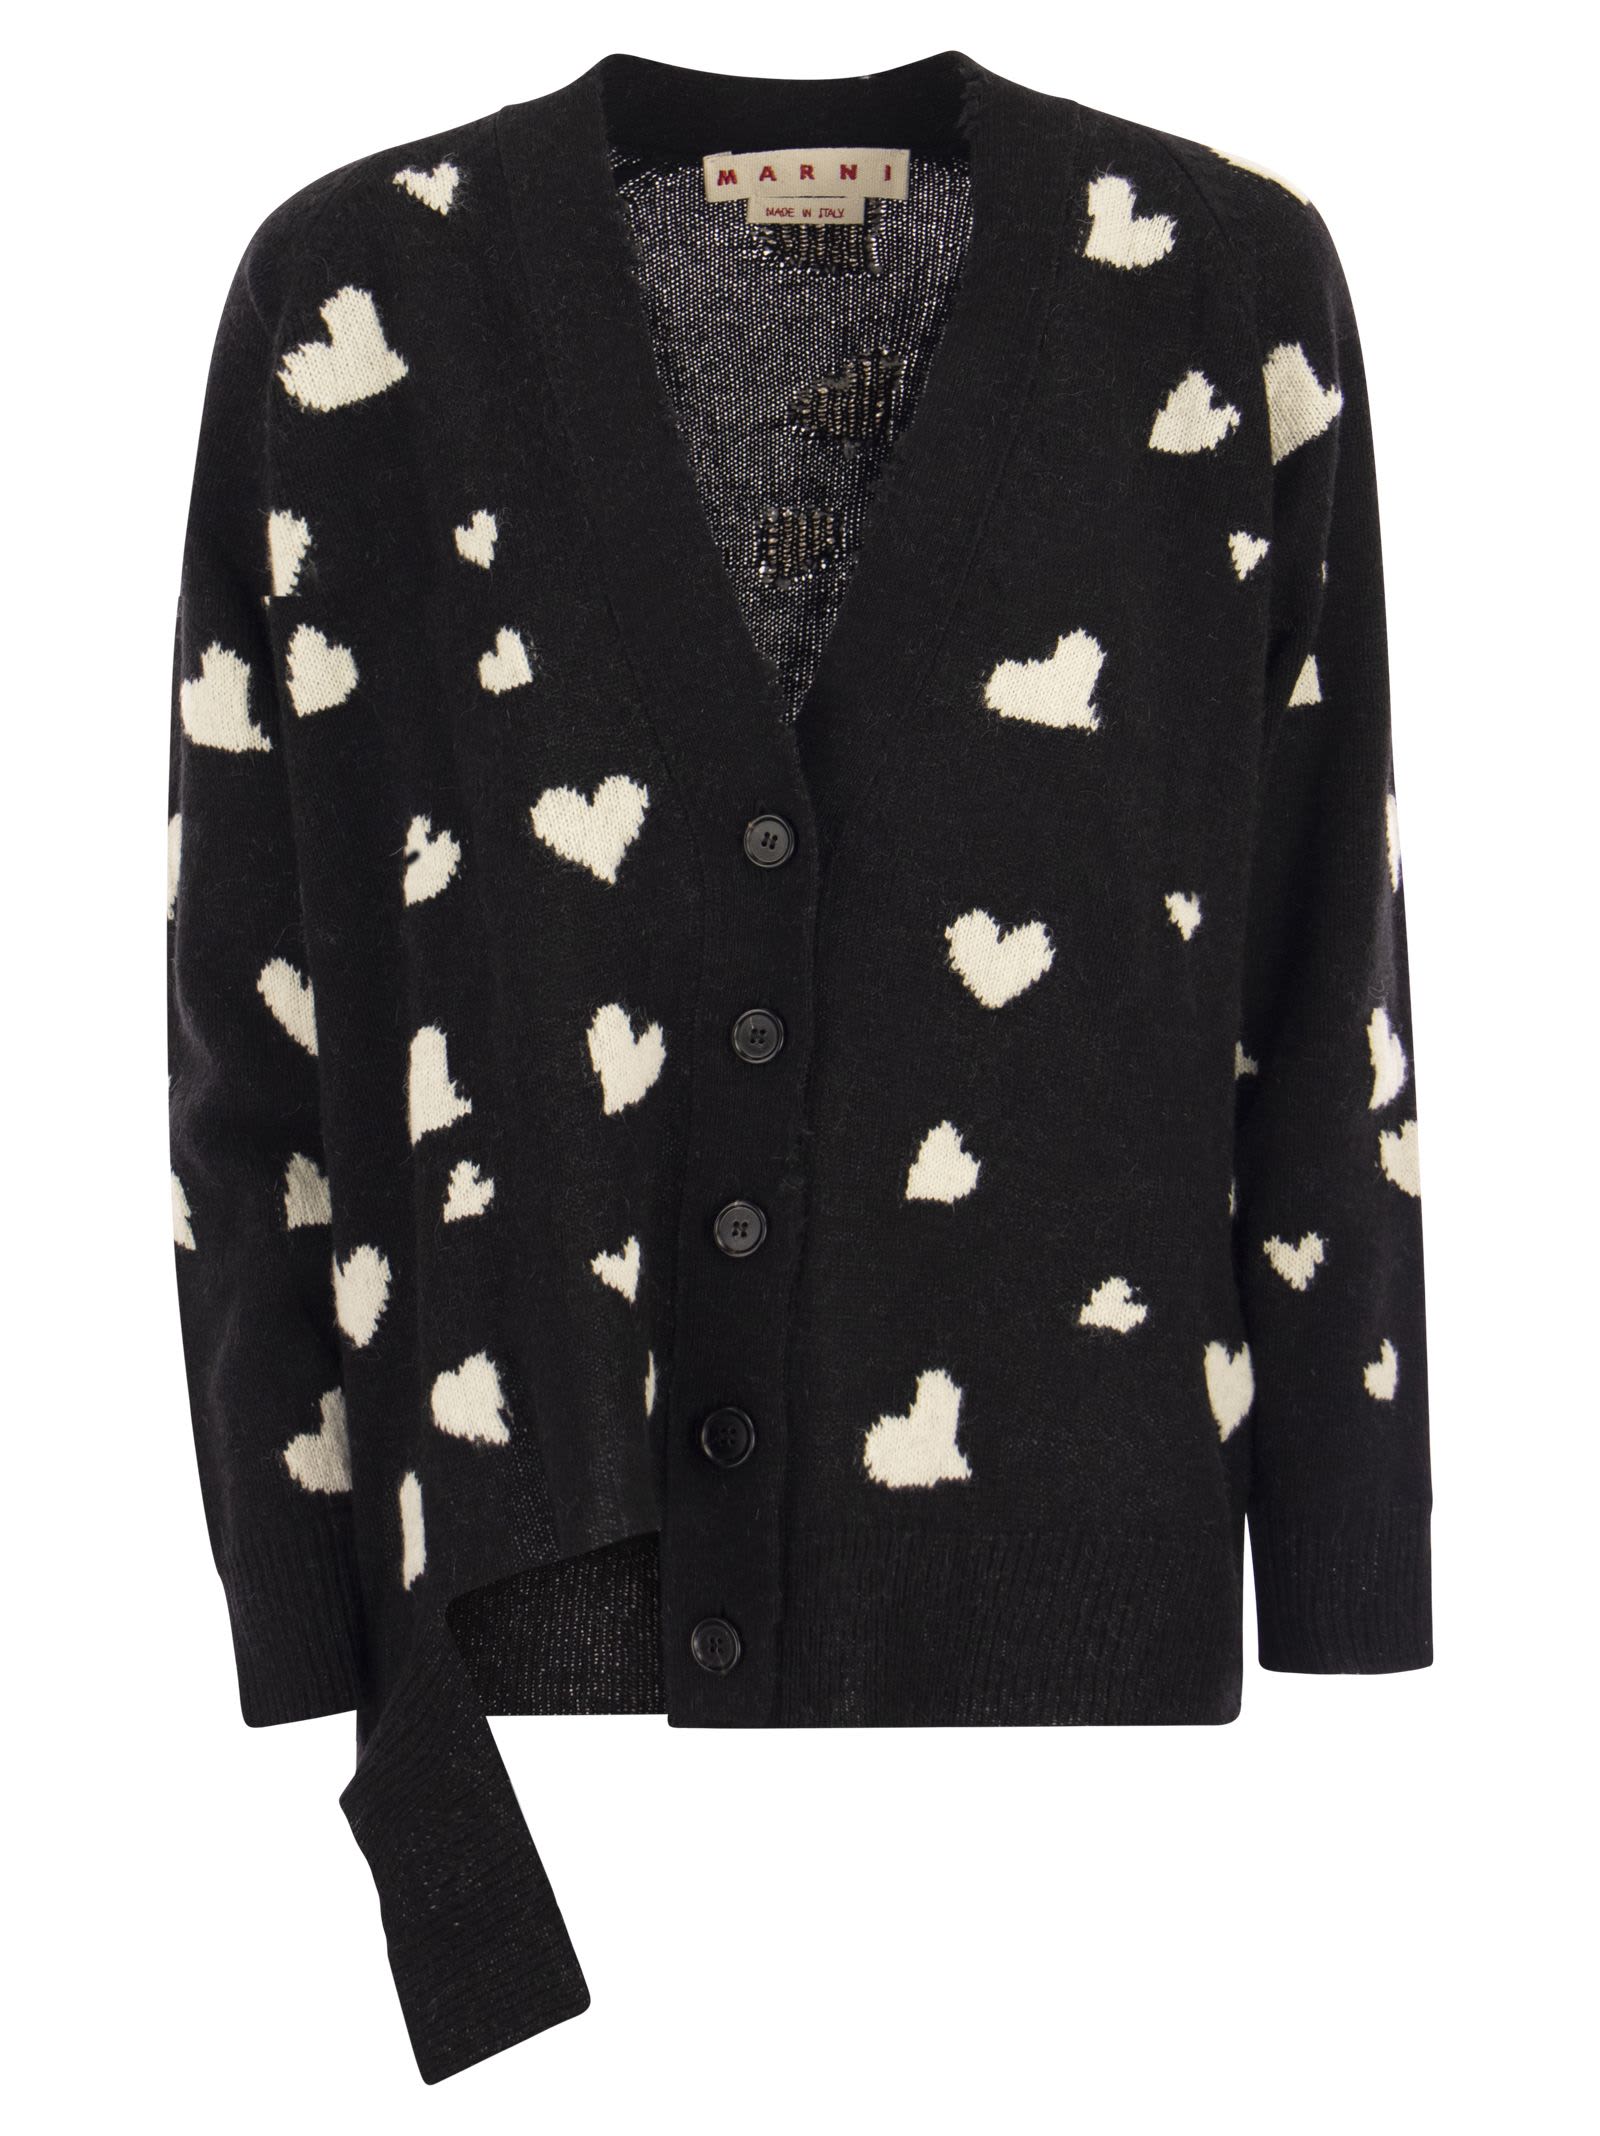 Shop Marni Long Wool Cardigan With Bunch Of Hearts Motif